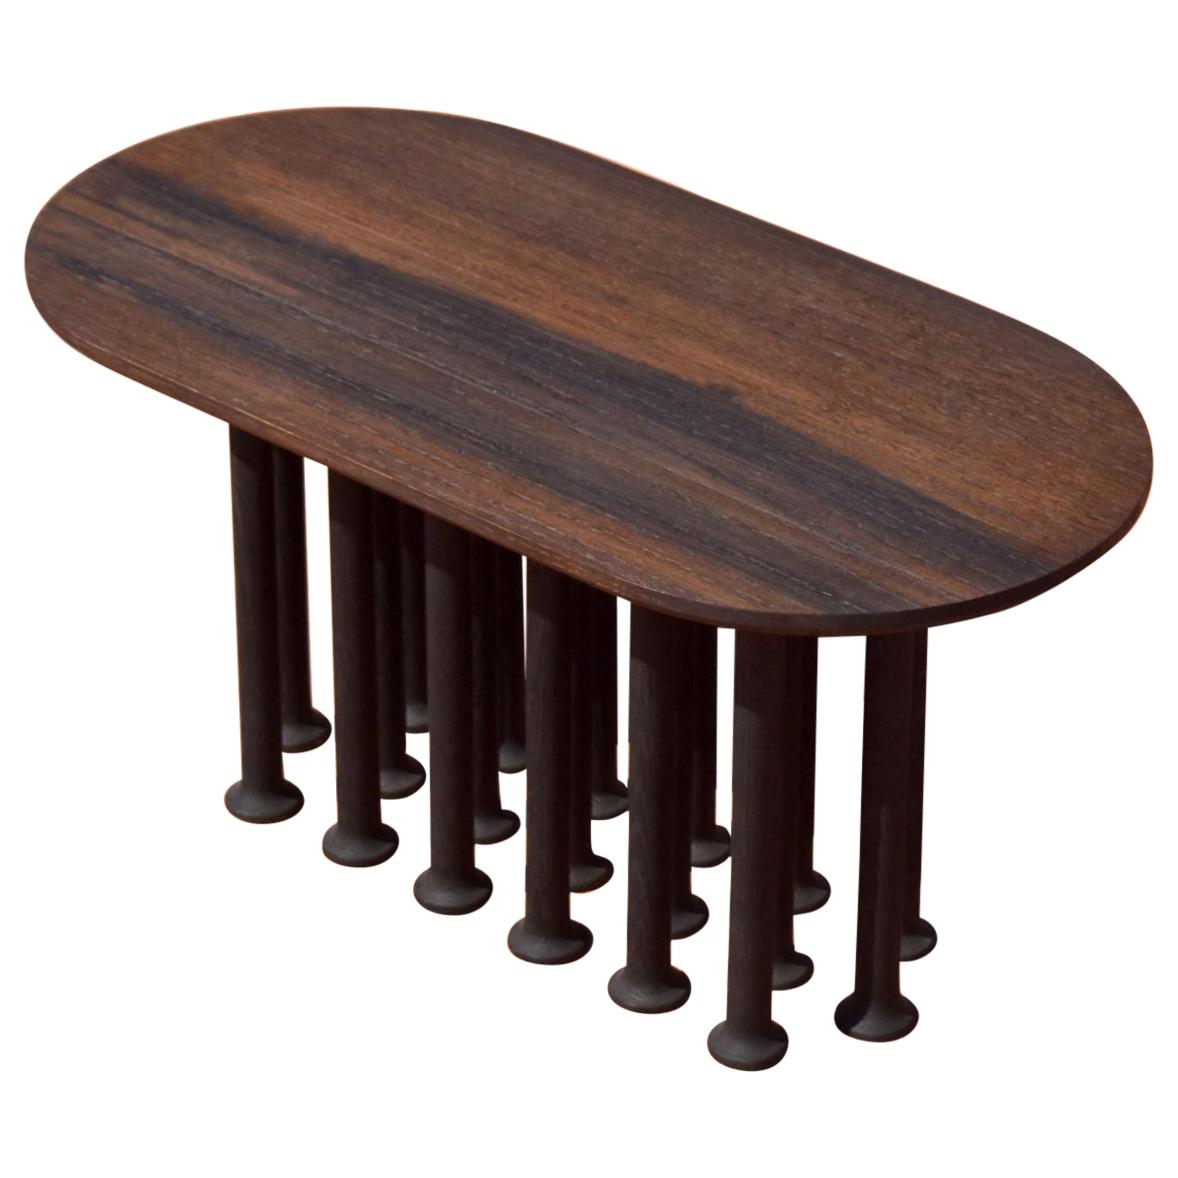 Contemporary Wood Side Table "Molinillo 017 Coffee Table" by Colección Estudio